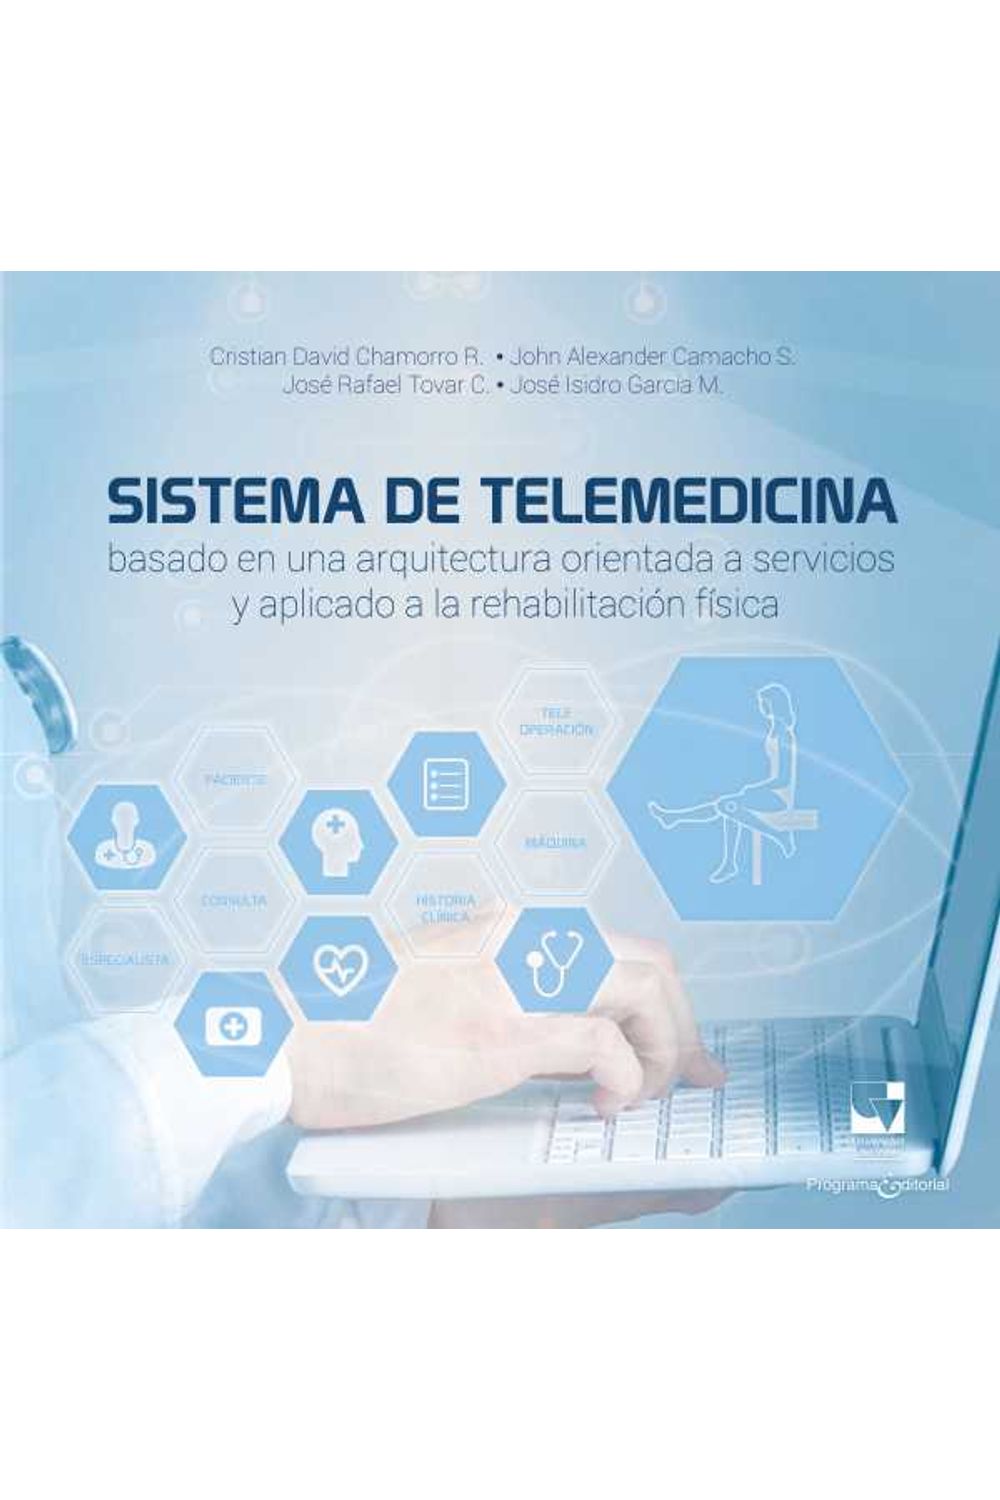 bw-sistema-de-telemedicina-basado-en-una-arquitectura-orientada-a-servicios-y-aplicado-a-la-rehabilitacioacuten-fiacutesica-programa-editorial-universidad-del-valle-9789585156173